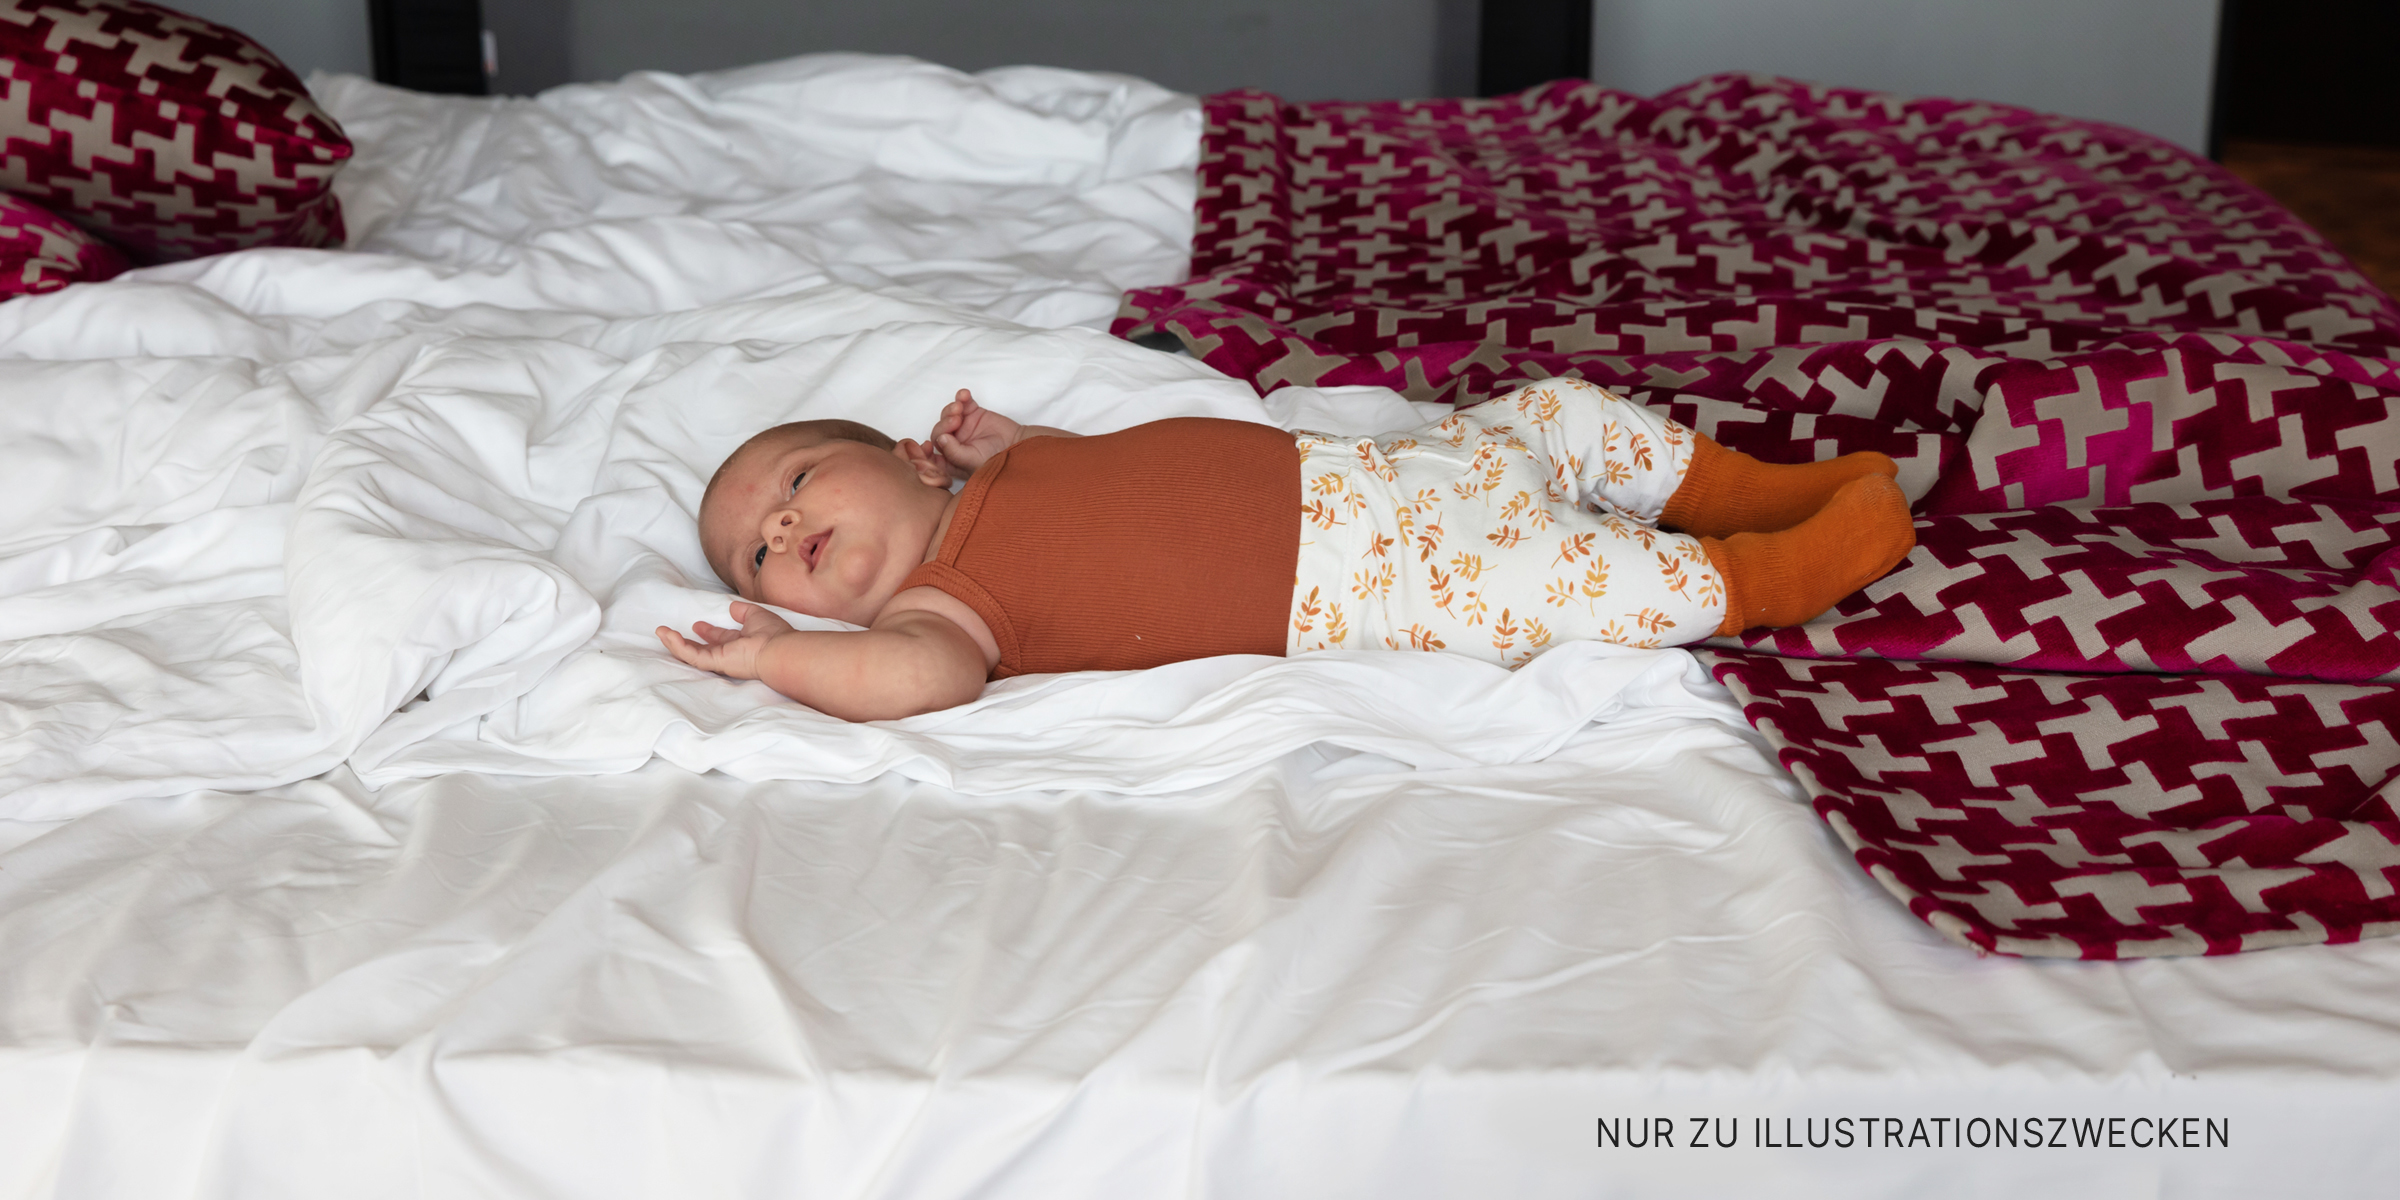 Ein auf dem Bett liegendes Baby | Quelle: Shutterstock